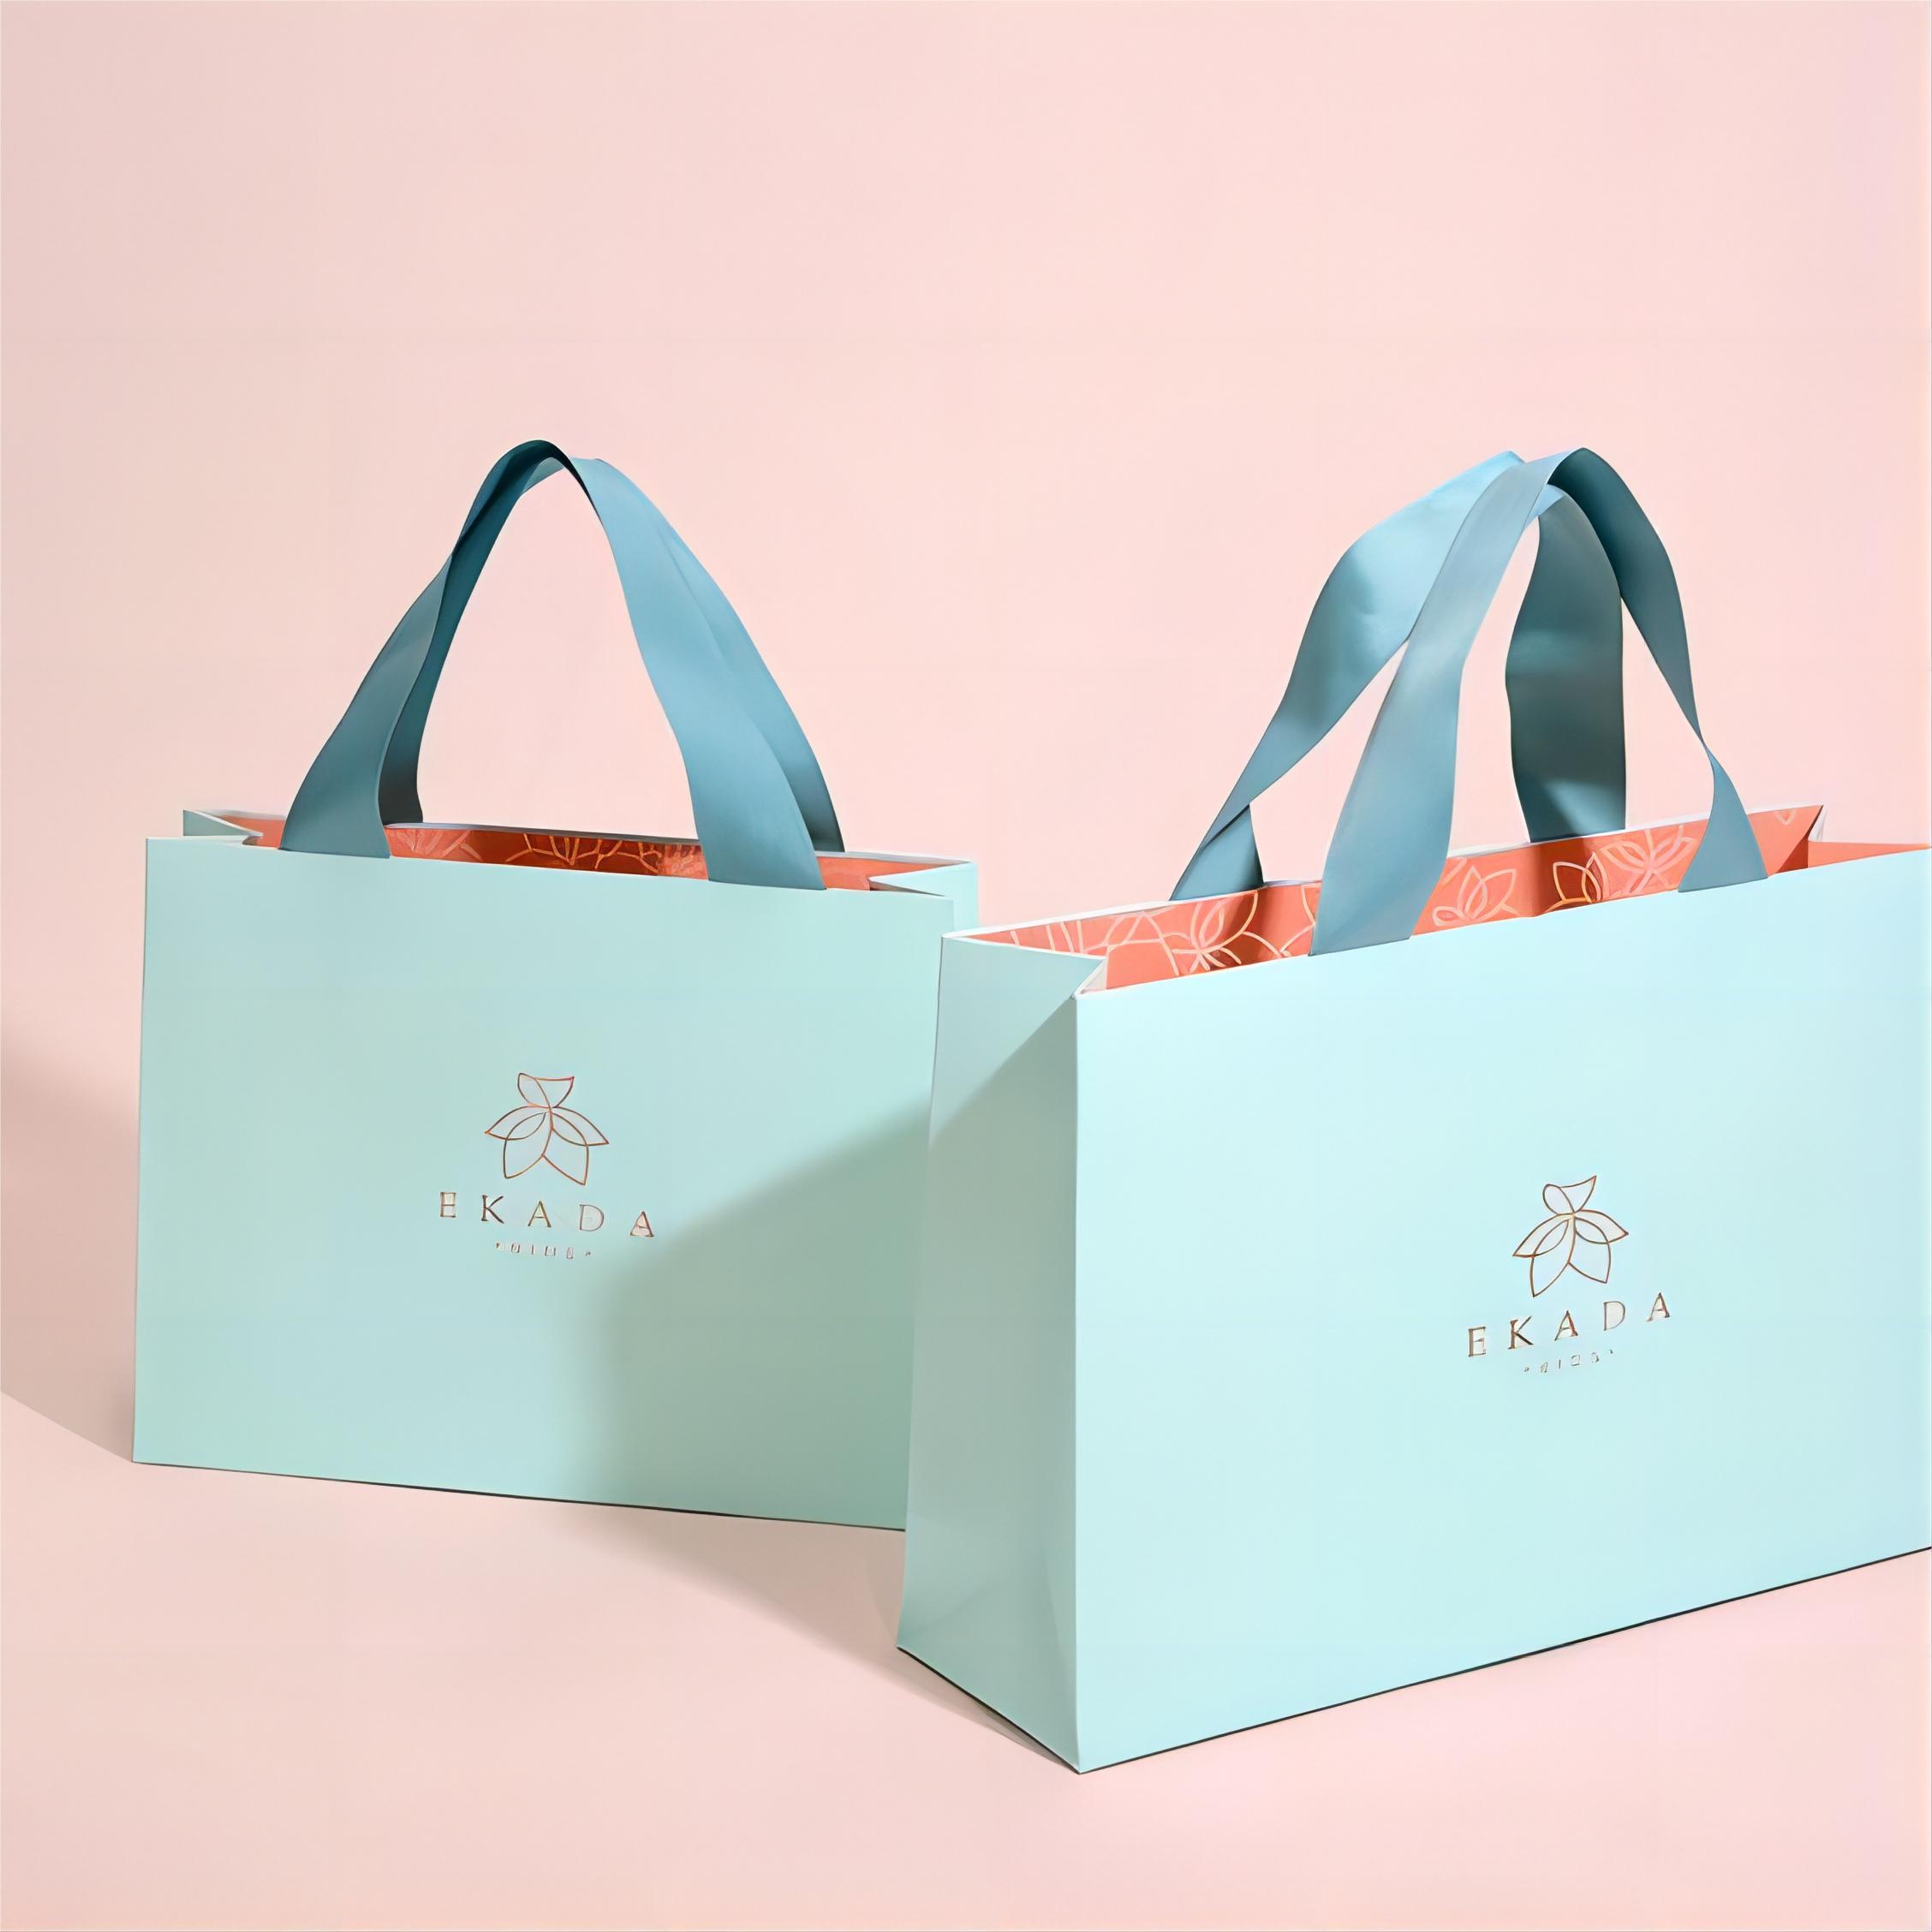 Molla di carta patinata colorata che vende sacchetto di imballaggio per negozi di stoffa per gioielli